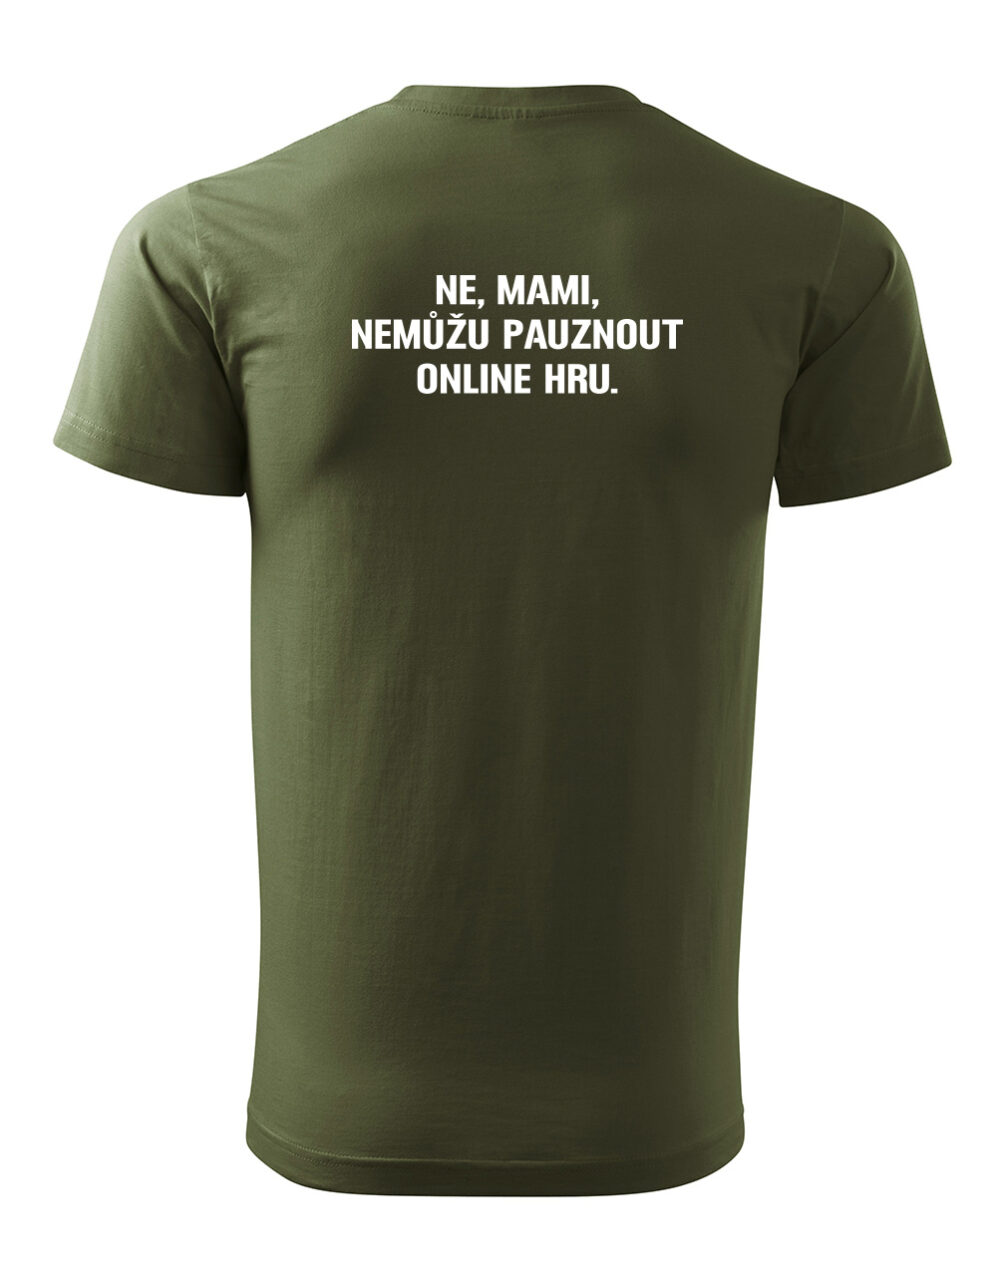 Pánské tričko s potiskem Nemůžu pauznout online hru vojenská zelená